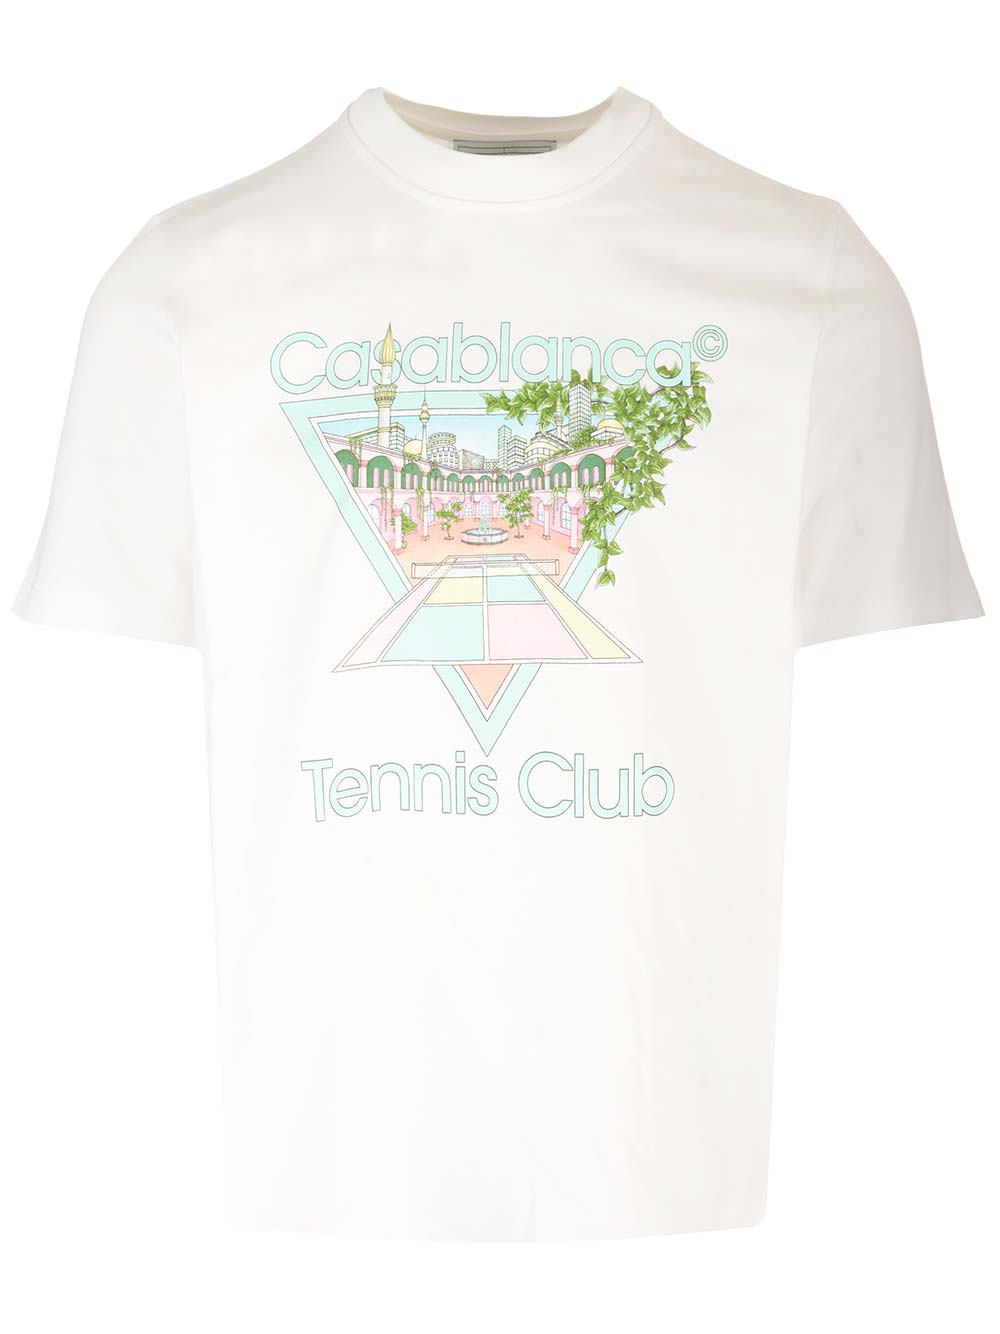 CASABLANCA TENNIS CLUB T-SHIRT